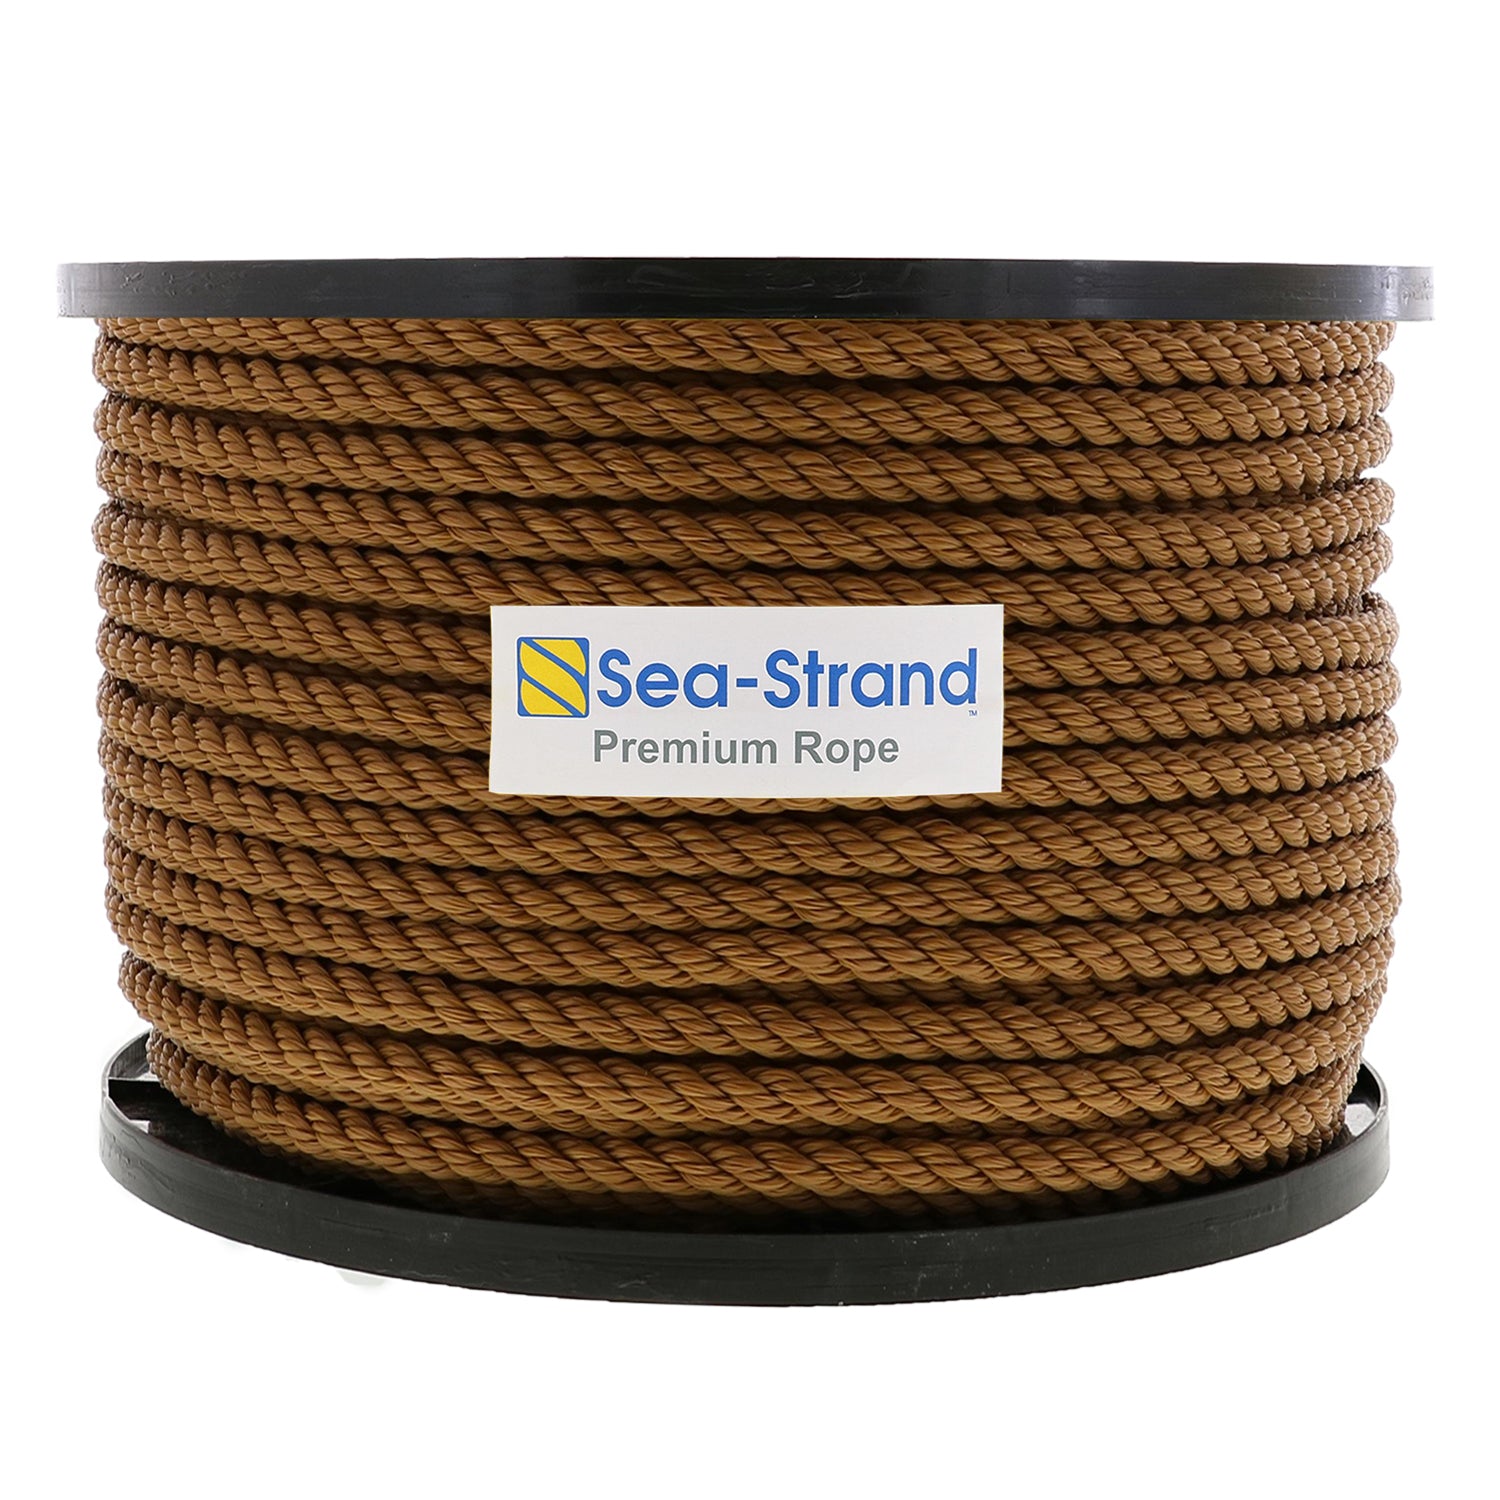 5/8 x 300' Reel, Tan, 3-Strand Polypropylene Rope